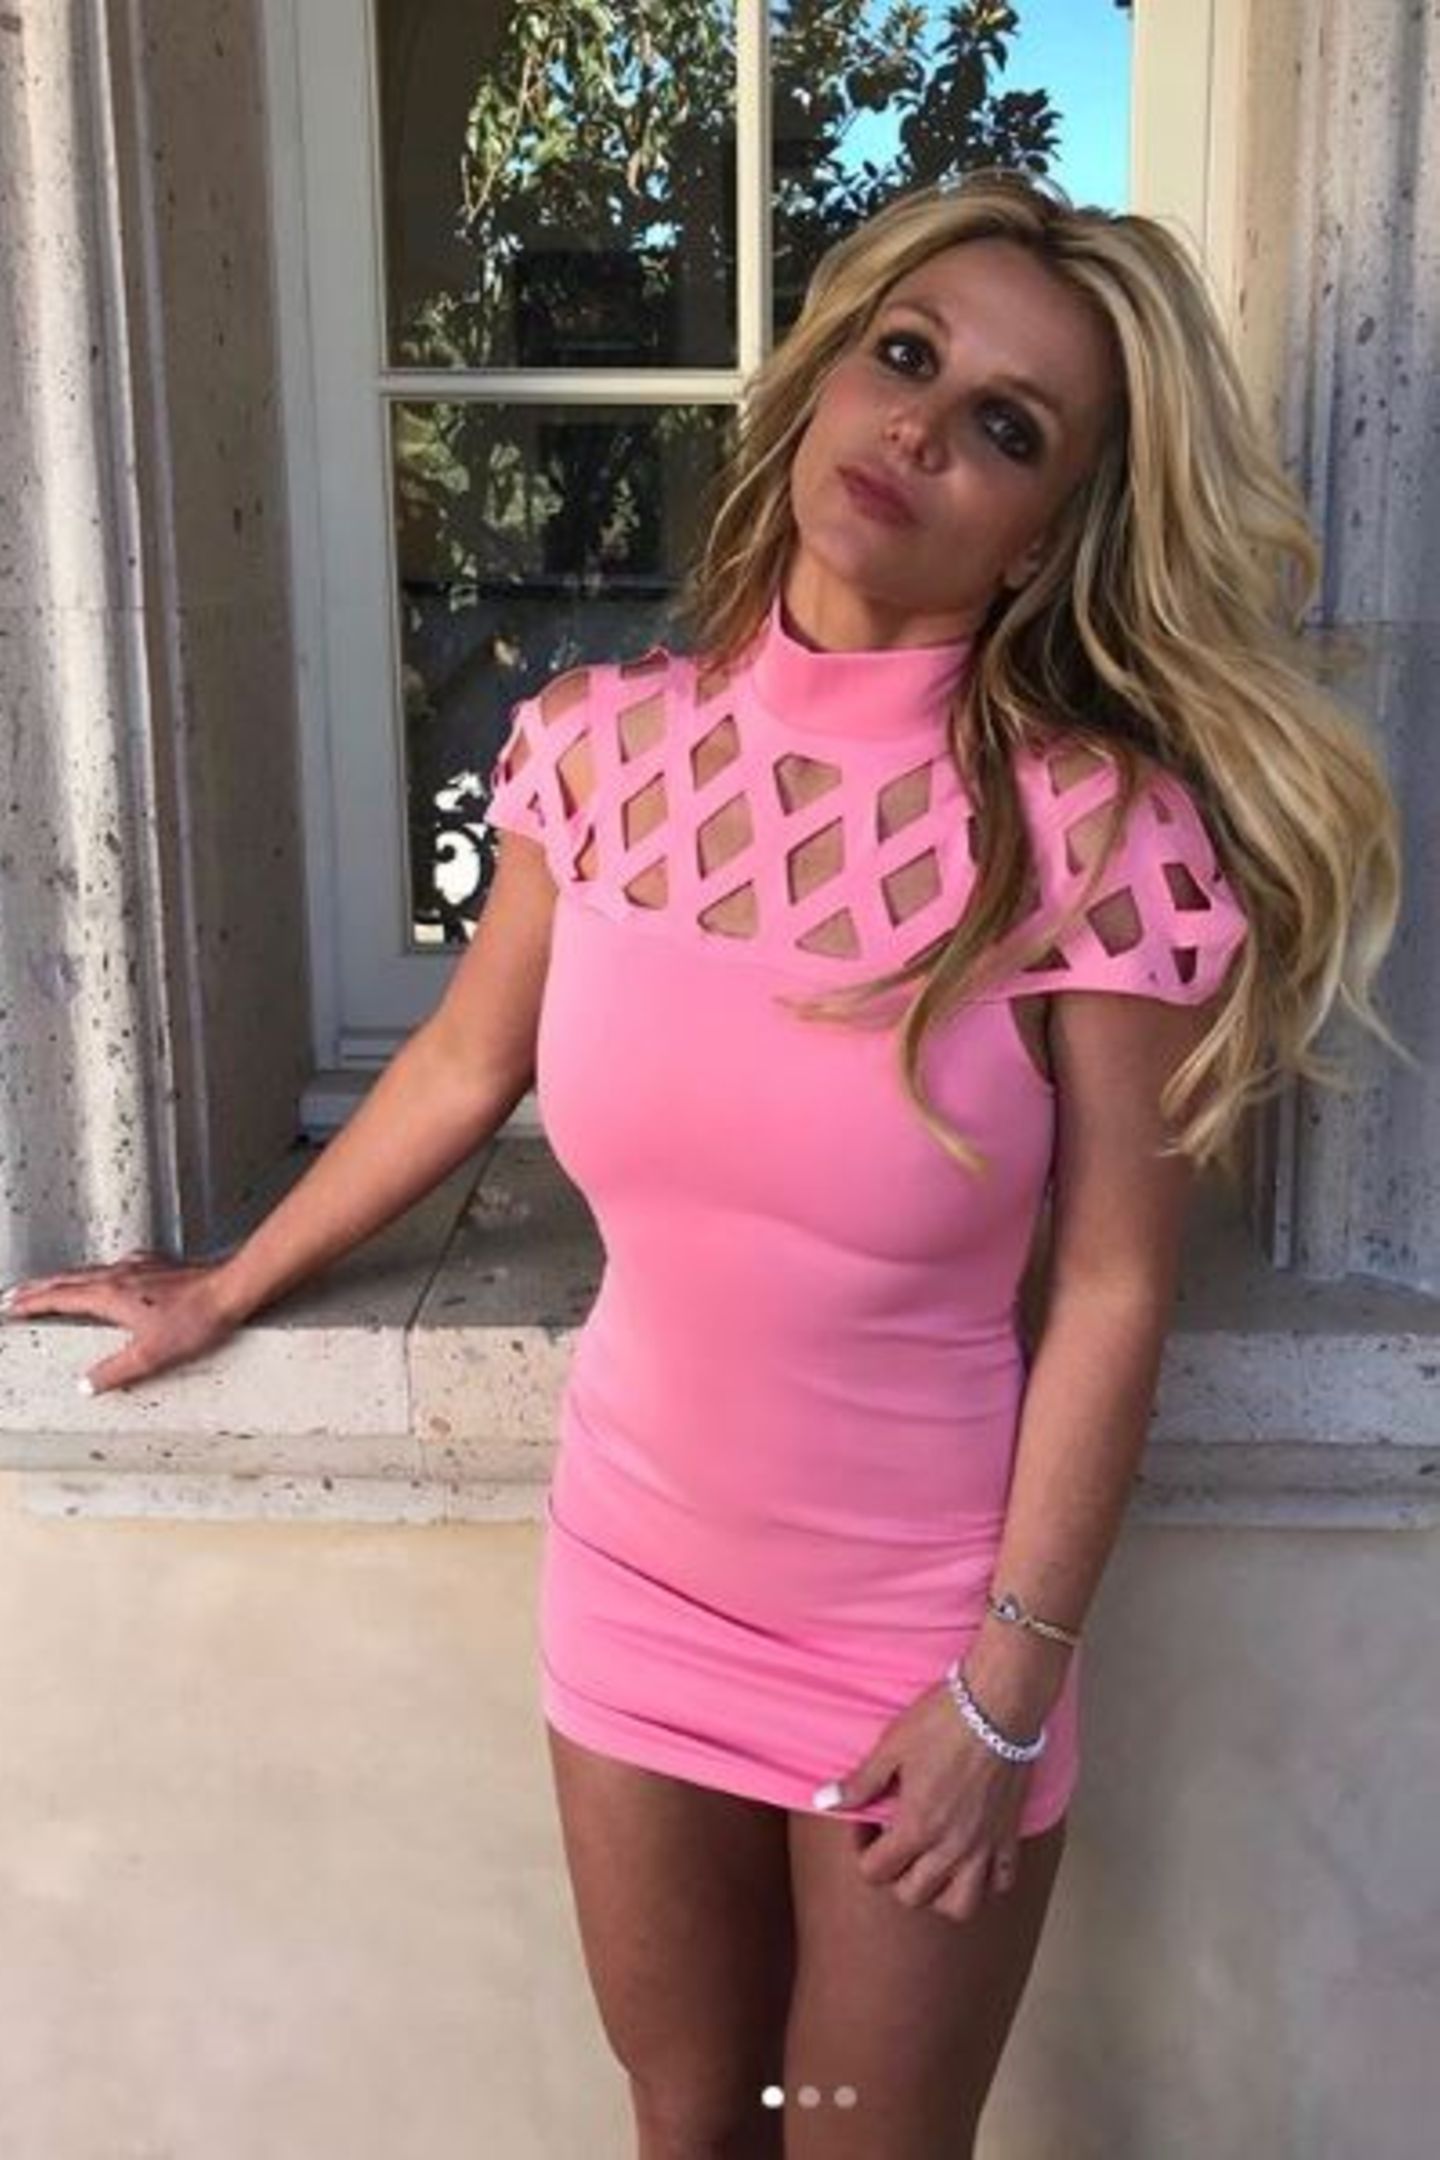 Neonpink, Gitter-Dekolleté und super kurzer Schnitt - diesem Kleid könnte man ebenfalls den Stempel "billig" verpassen. Dabei ist Britneys Lifestyle alles andere als günstig. 9 Millionen Euro soll sie im vergangenen Jahr ausgegeben haben.